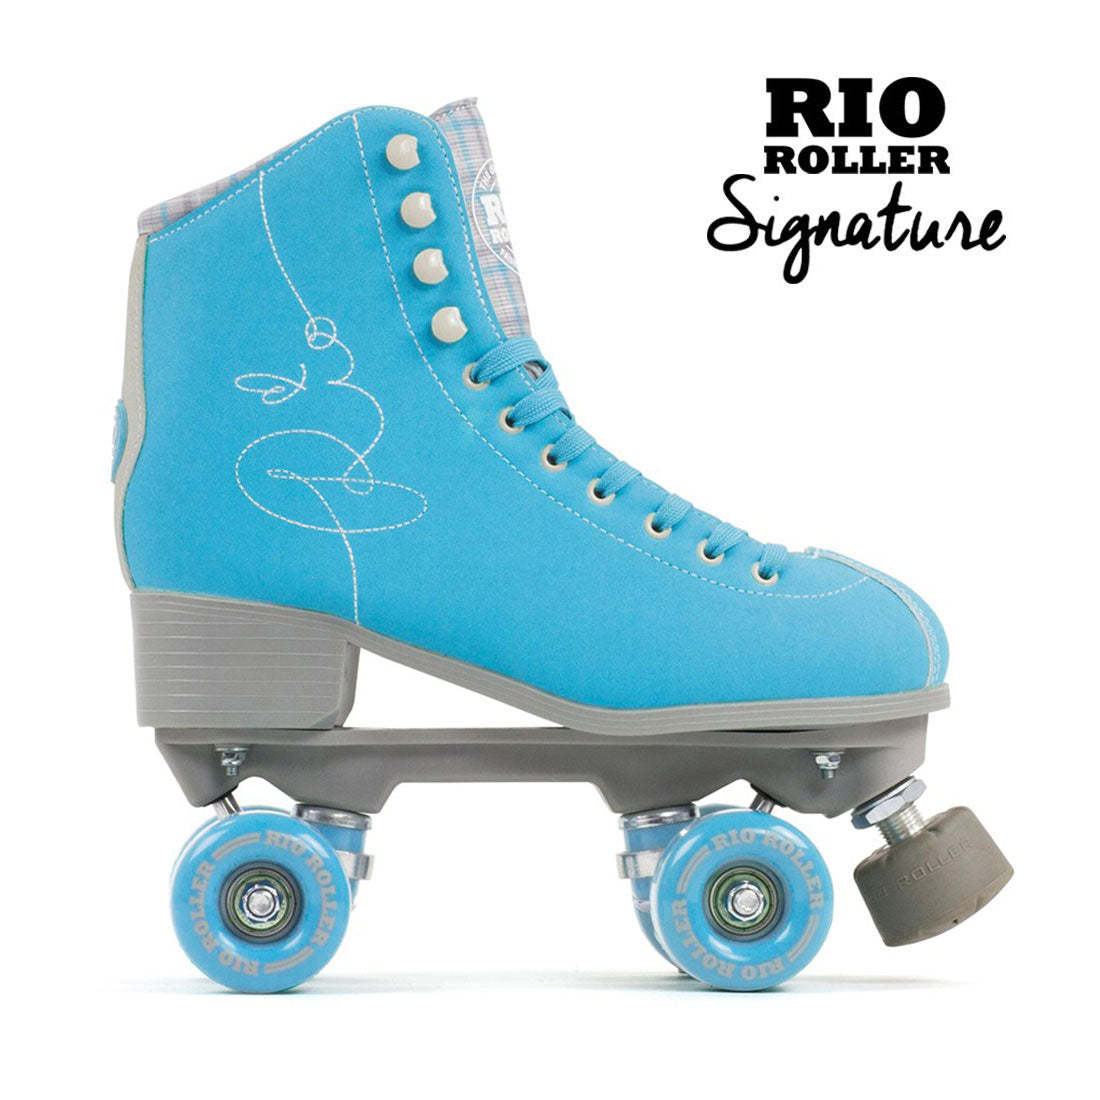 Rio Roller Signature - Blue Roller Skates